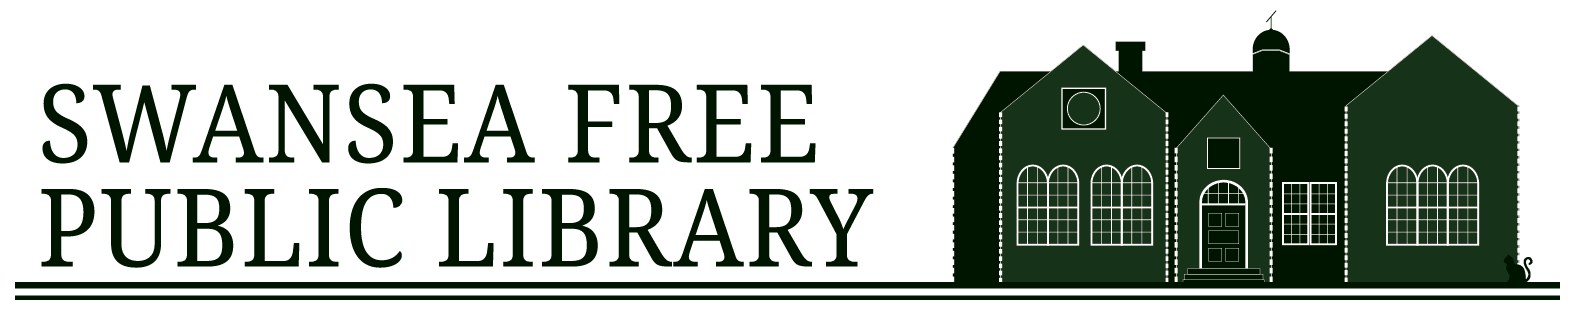 Swansea Free Public Library